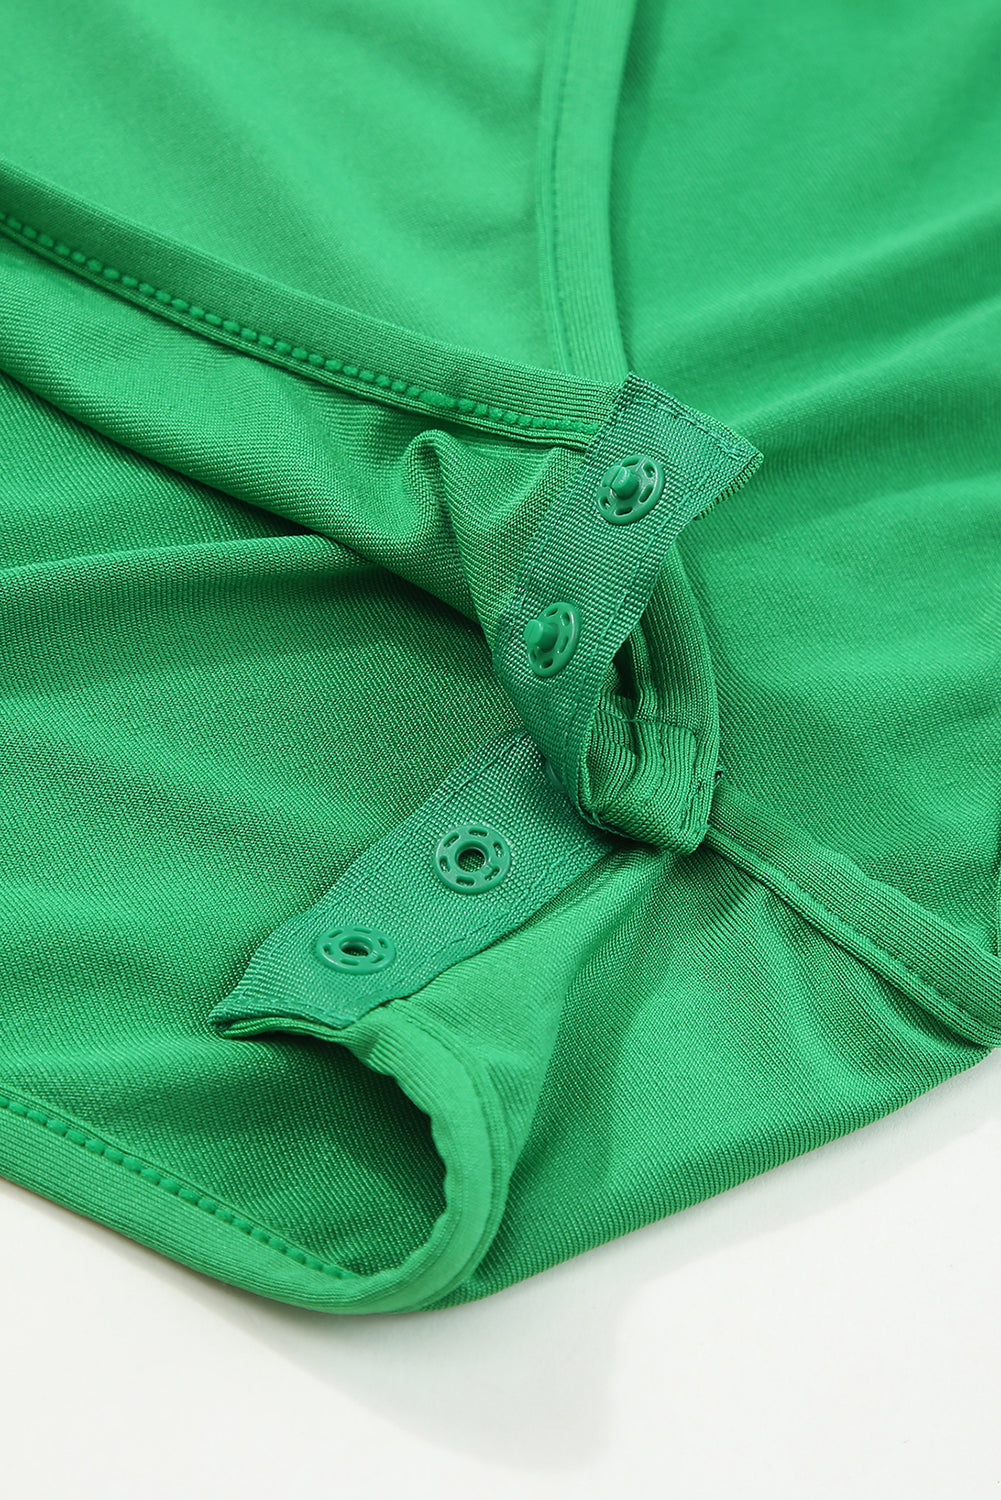 Grüner einfarbiger One-Shoulder-Body mit Rüschenärmeln